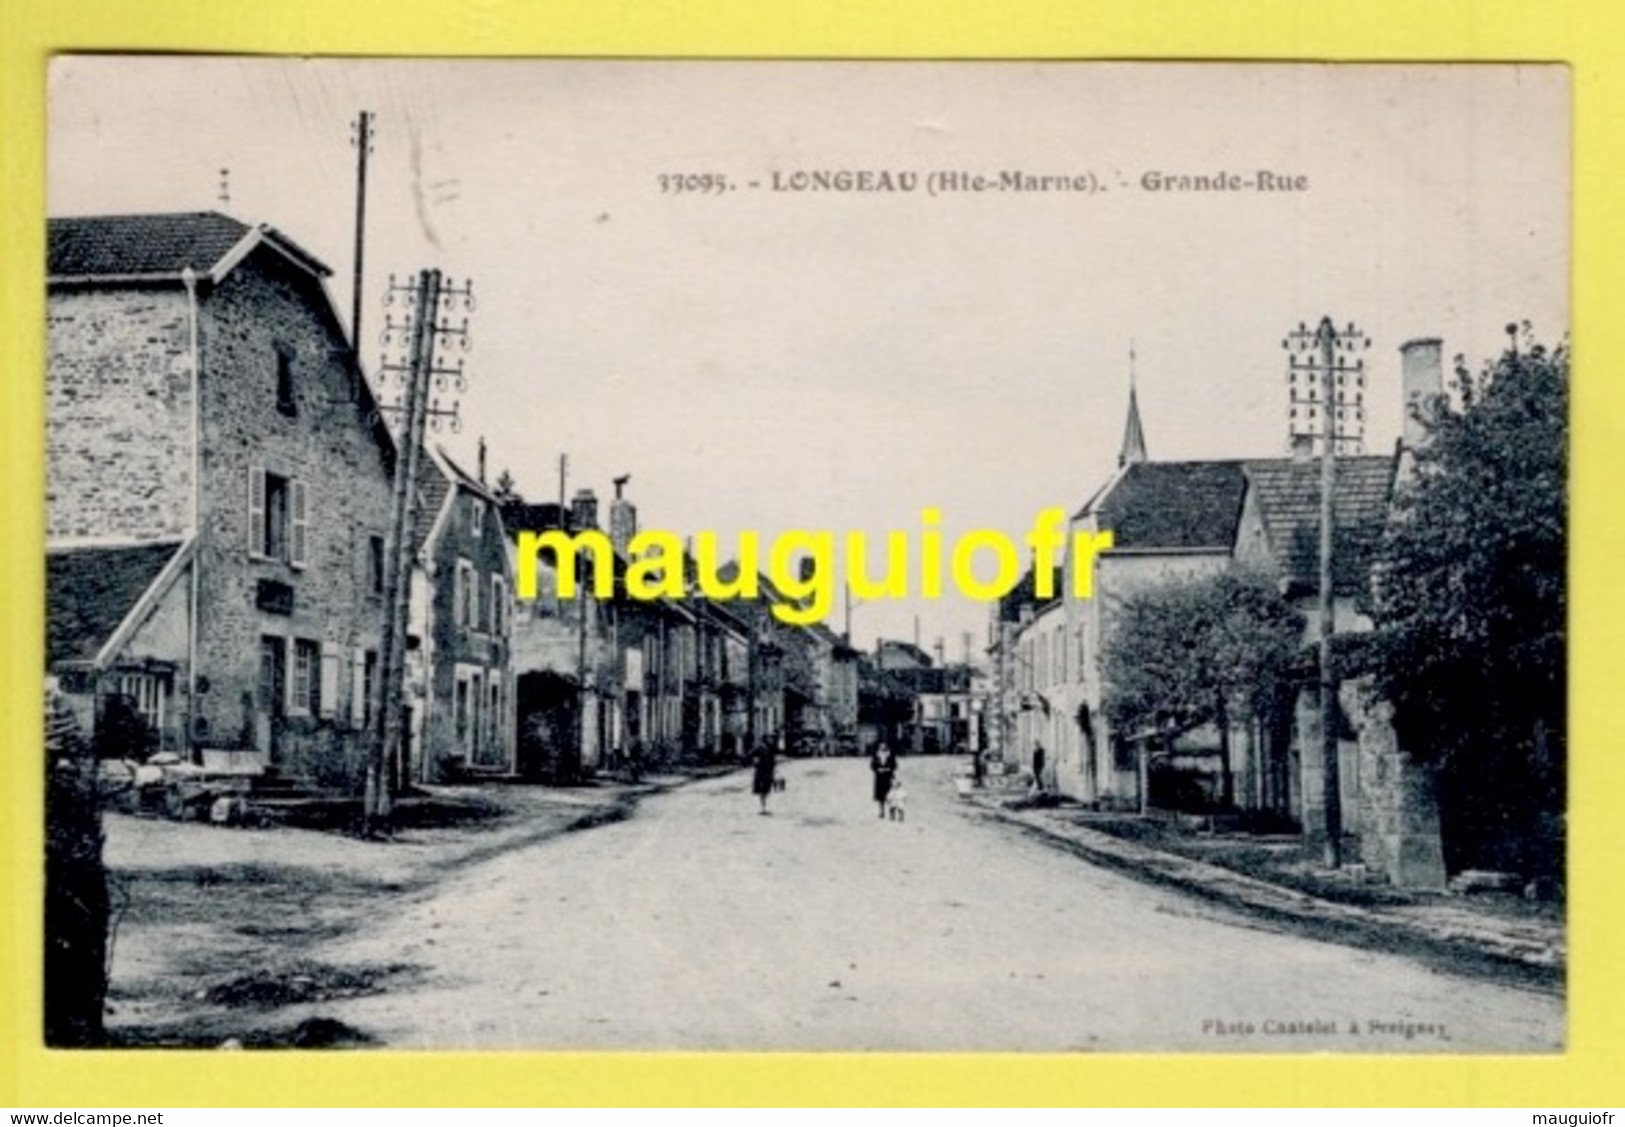 52 HAUTE MARNE / LONGEAU / GRANDE-RUE / 1938 - Le Vallinot Longeau Percey